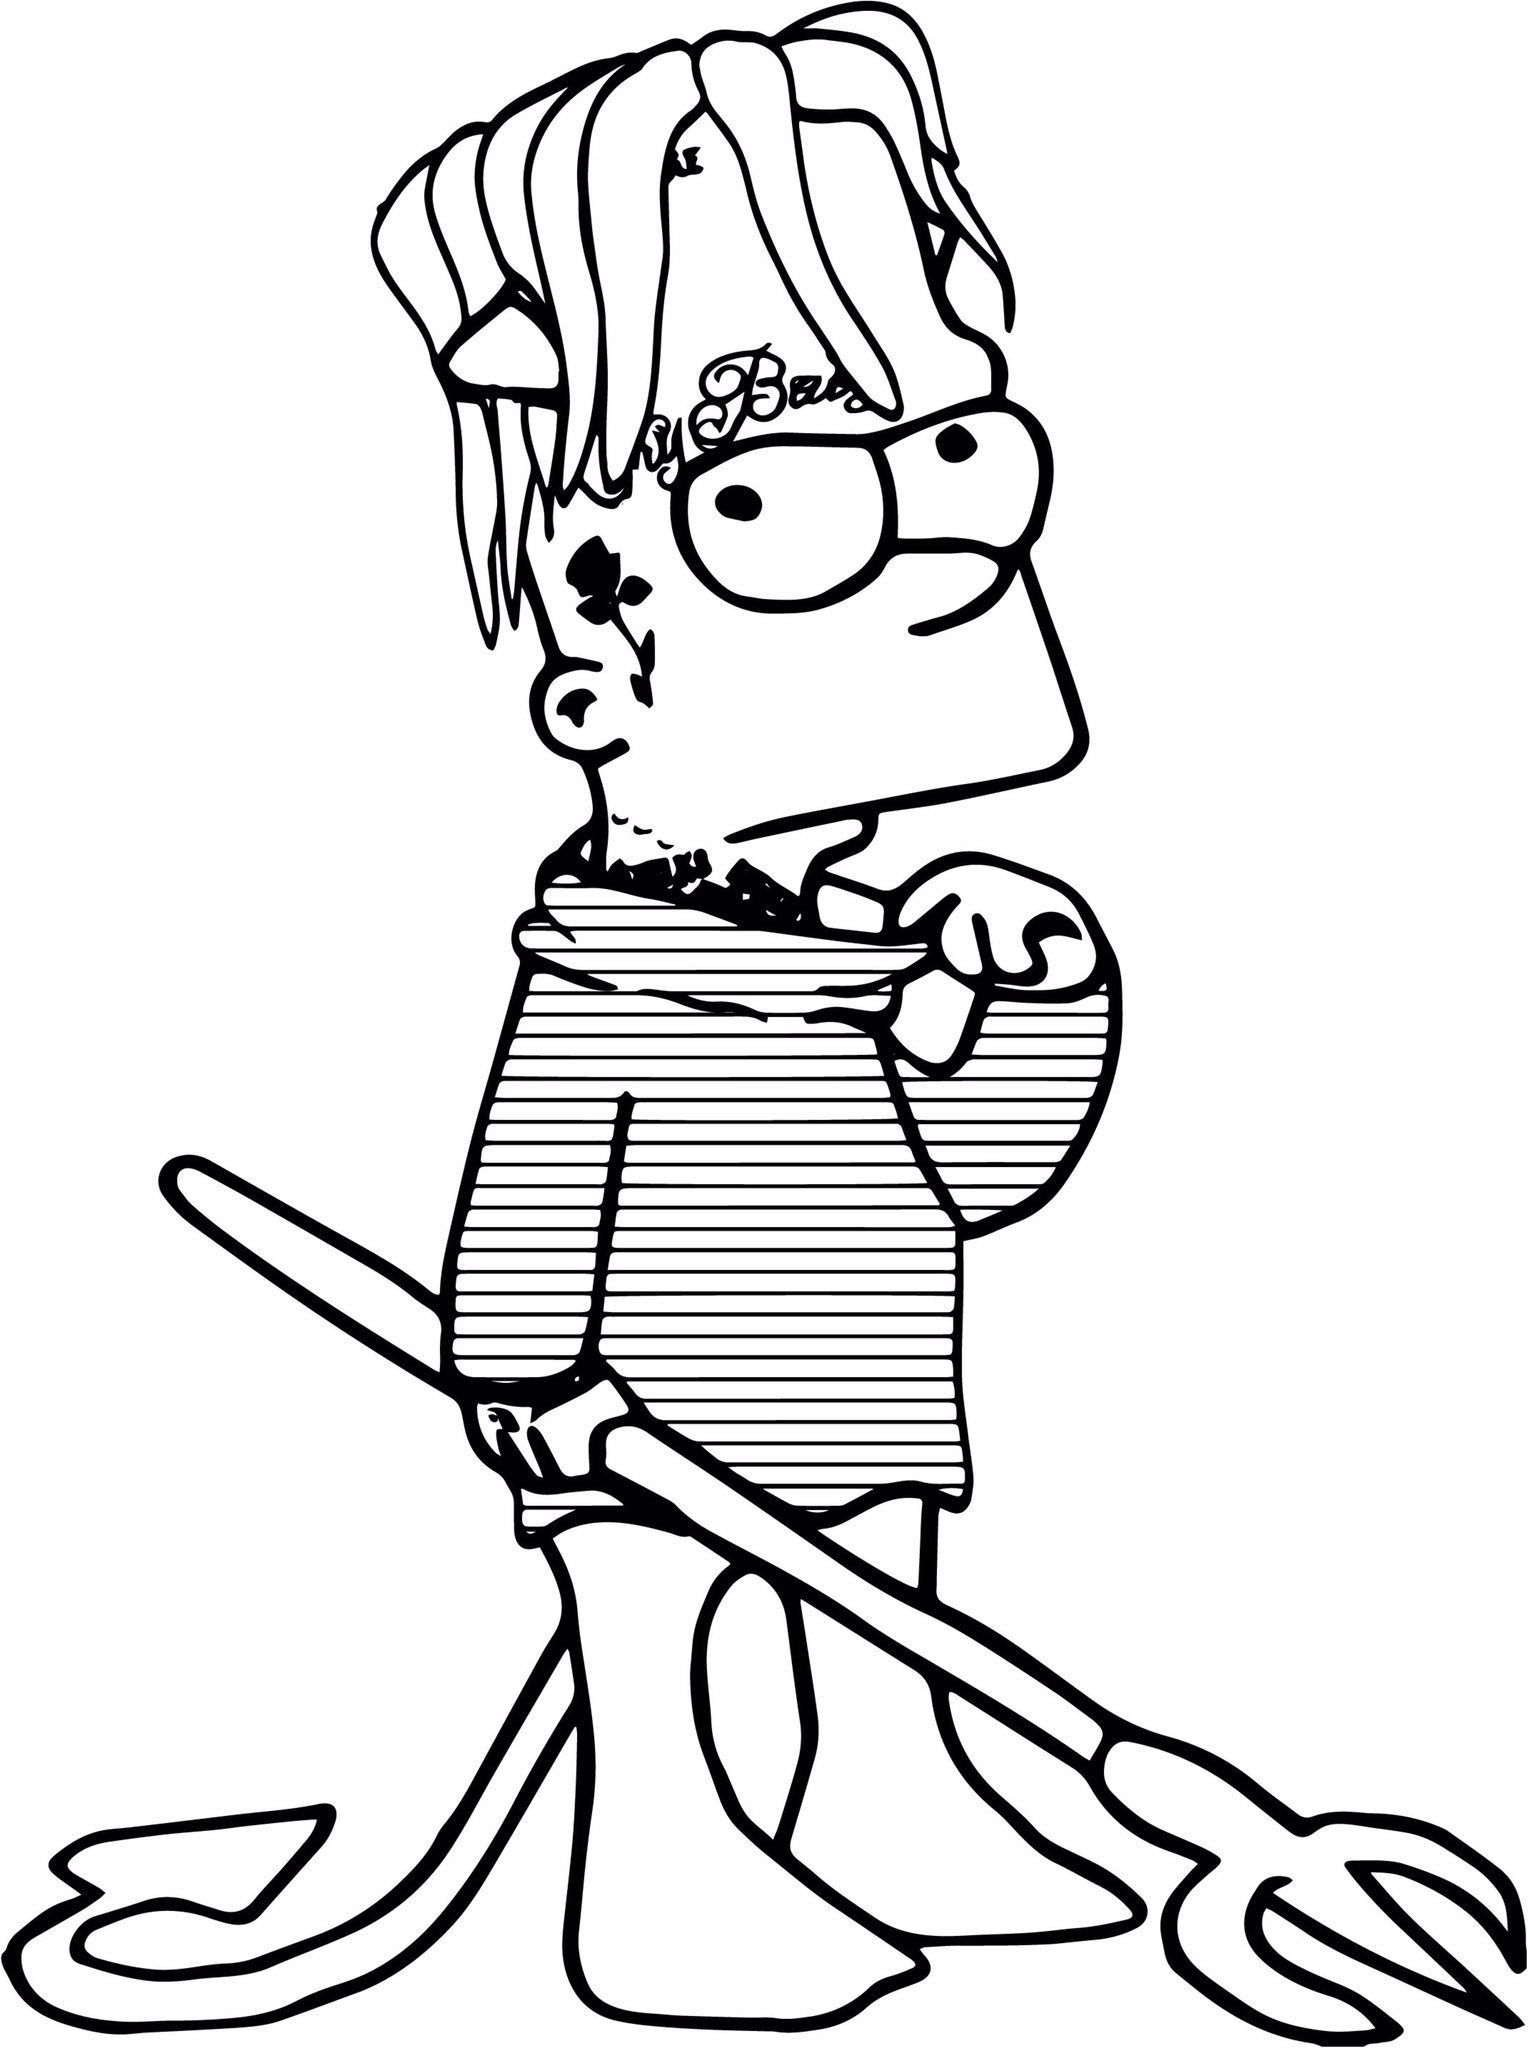 Simpsons Drawings